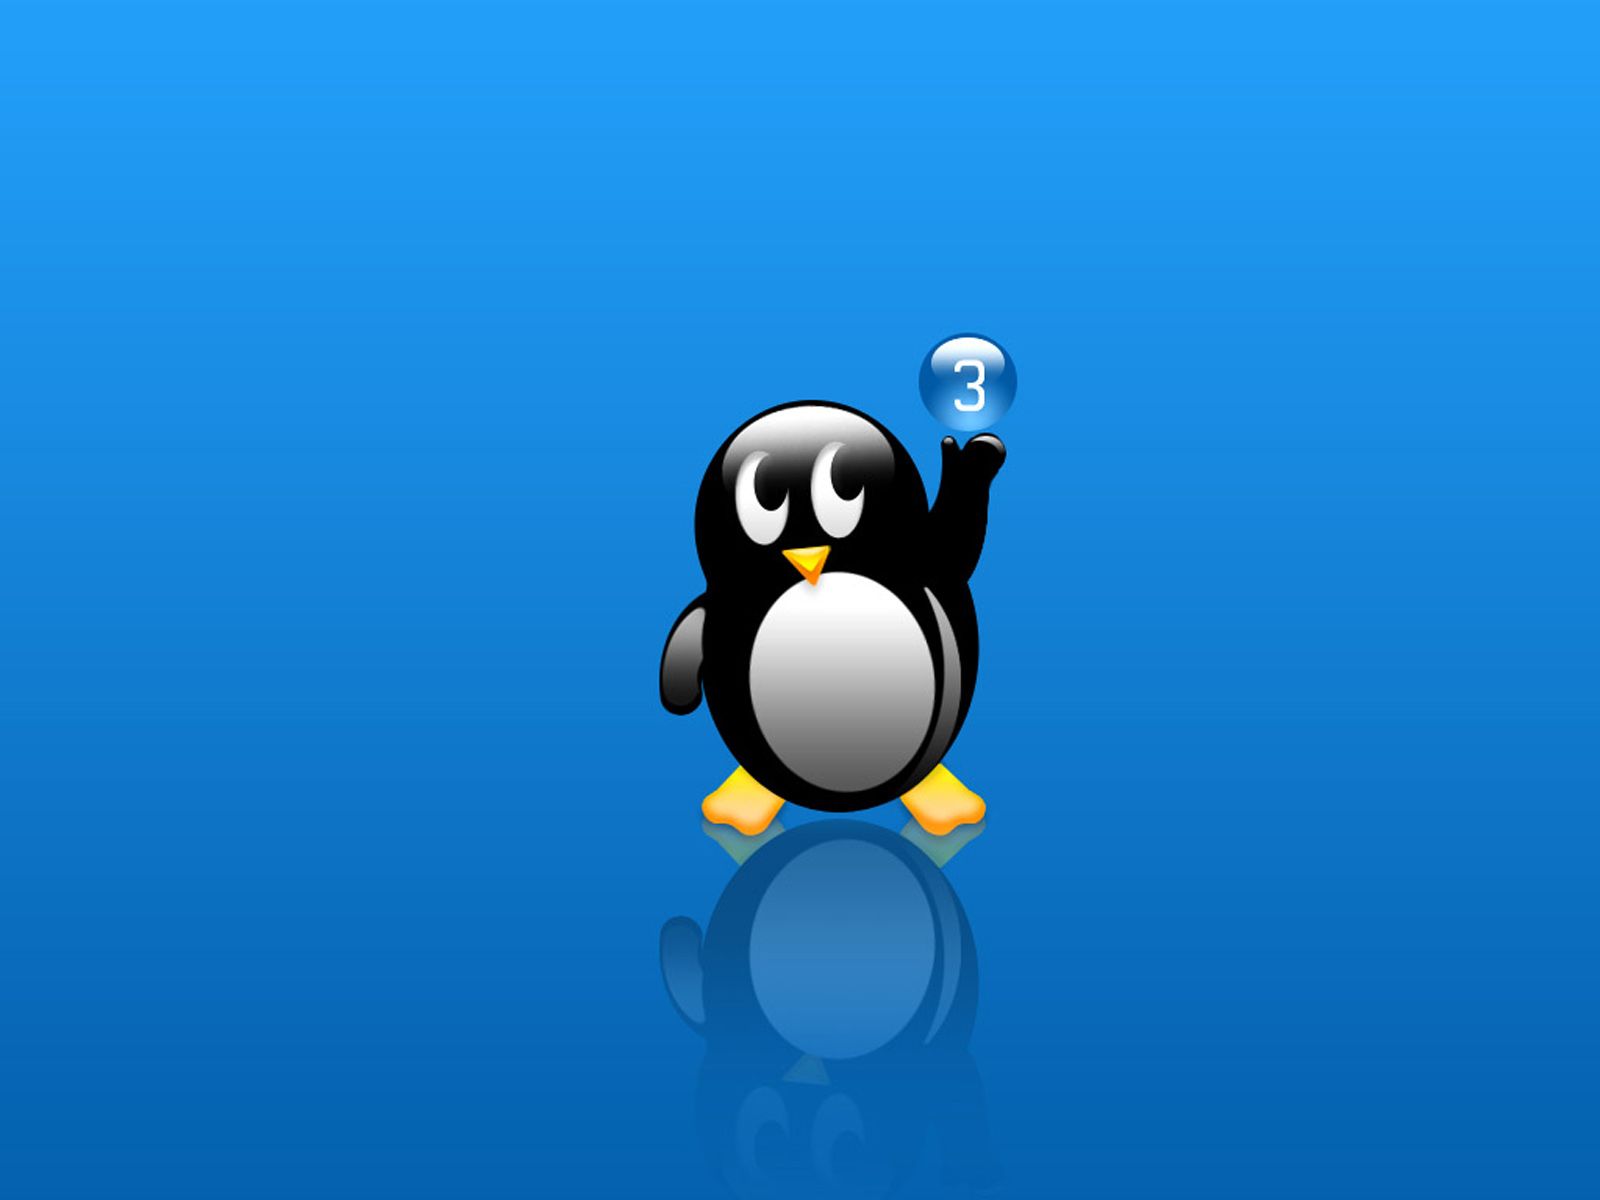 Free download the linux desktop wallpaper linux operating system desktop background [1600x1200] for your Desktop, Mobile & Tablet. Explore Linux Wallpaper for Desktop. Ubuntu Desktop Wallpaper, Linux Mint Wallpaper